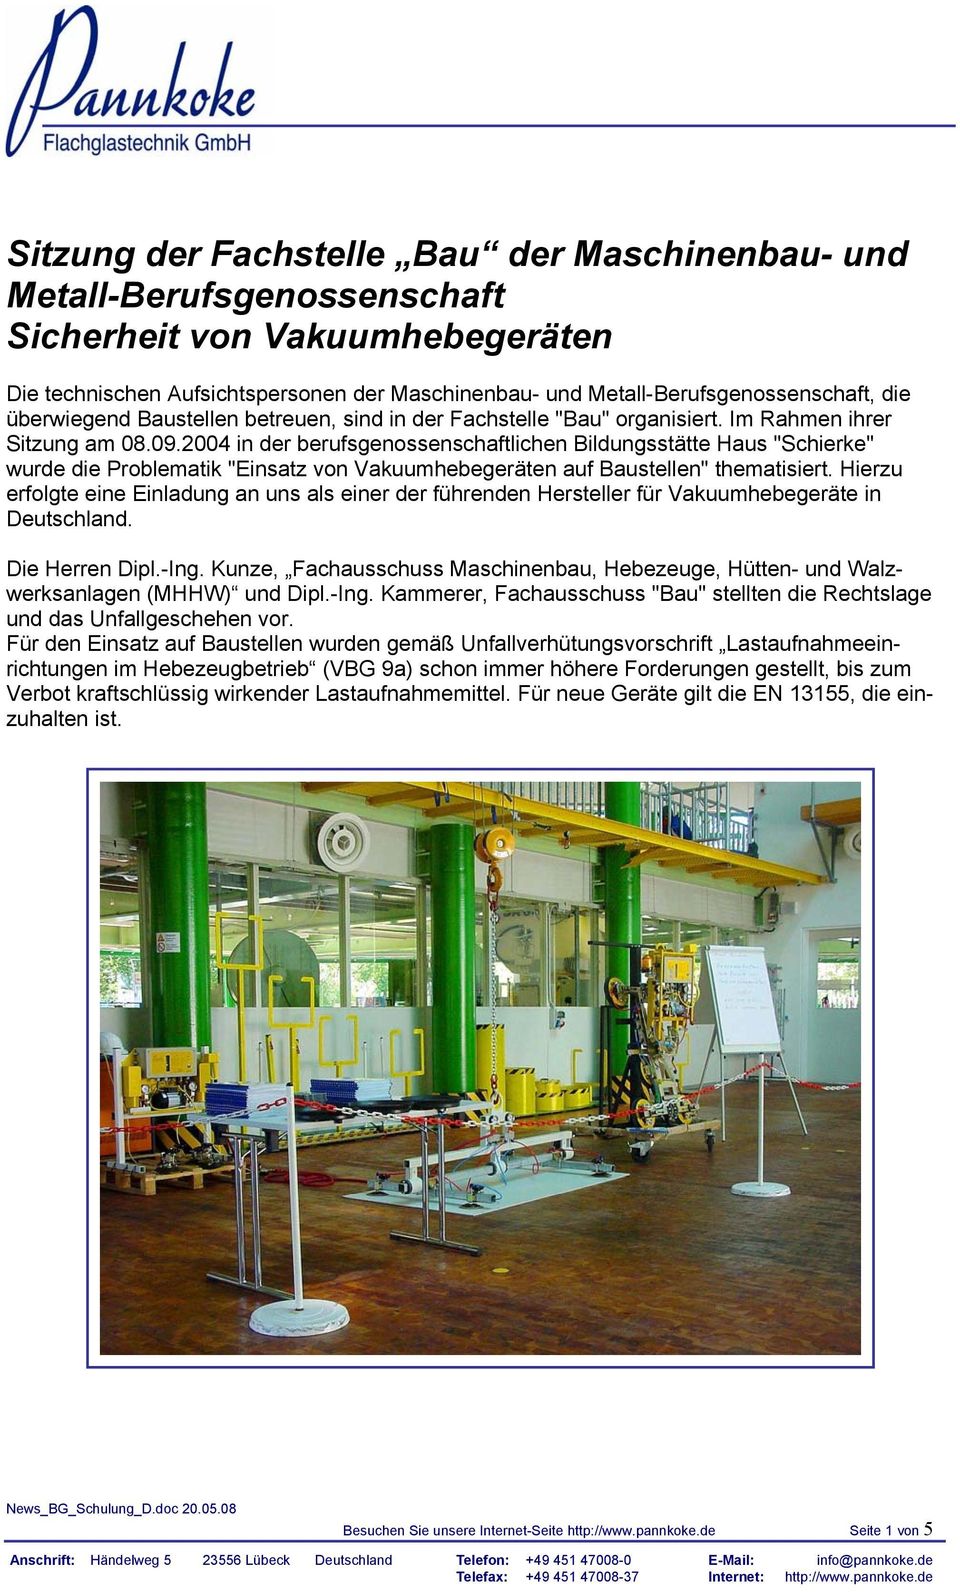 2004 in der berufsgenossenschaftlichen Bildungsstätte Haus "Schierke" wurde die Problematik "Einsatz von Vakuumhebegeräten auf Baustellen" thematisiert.